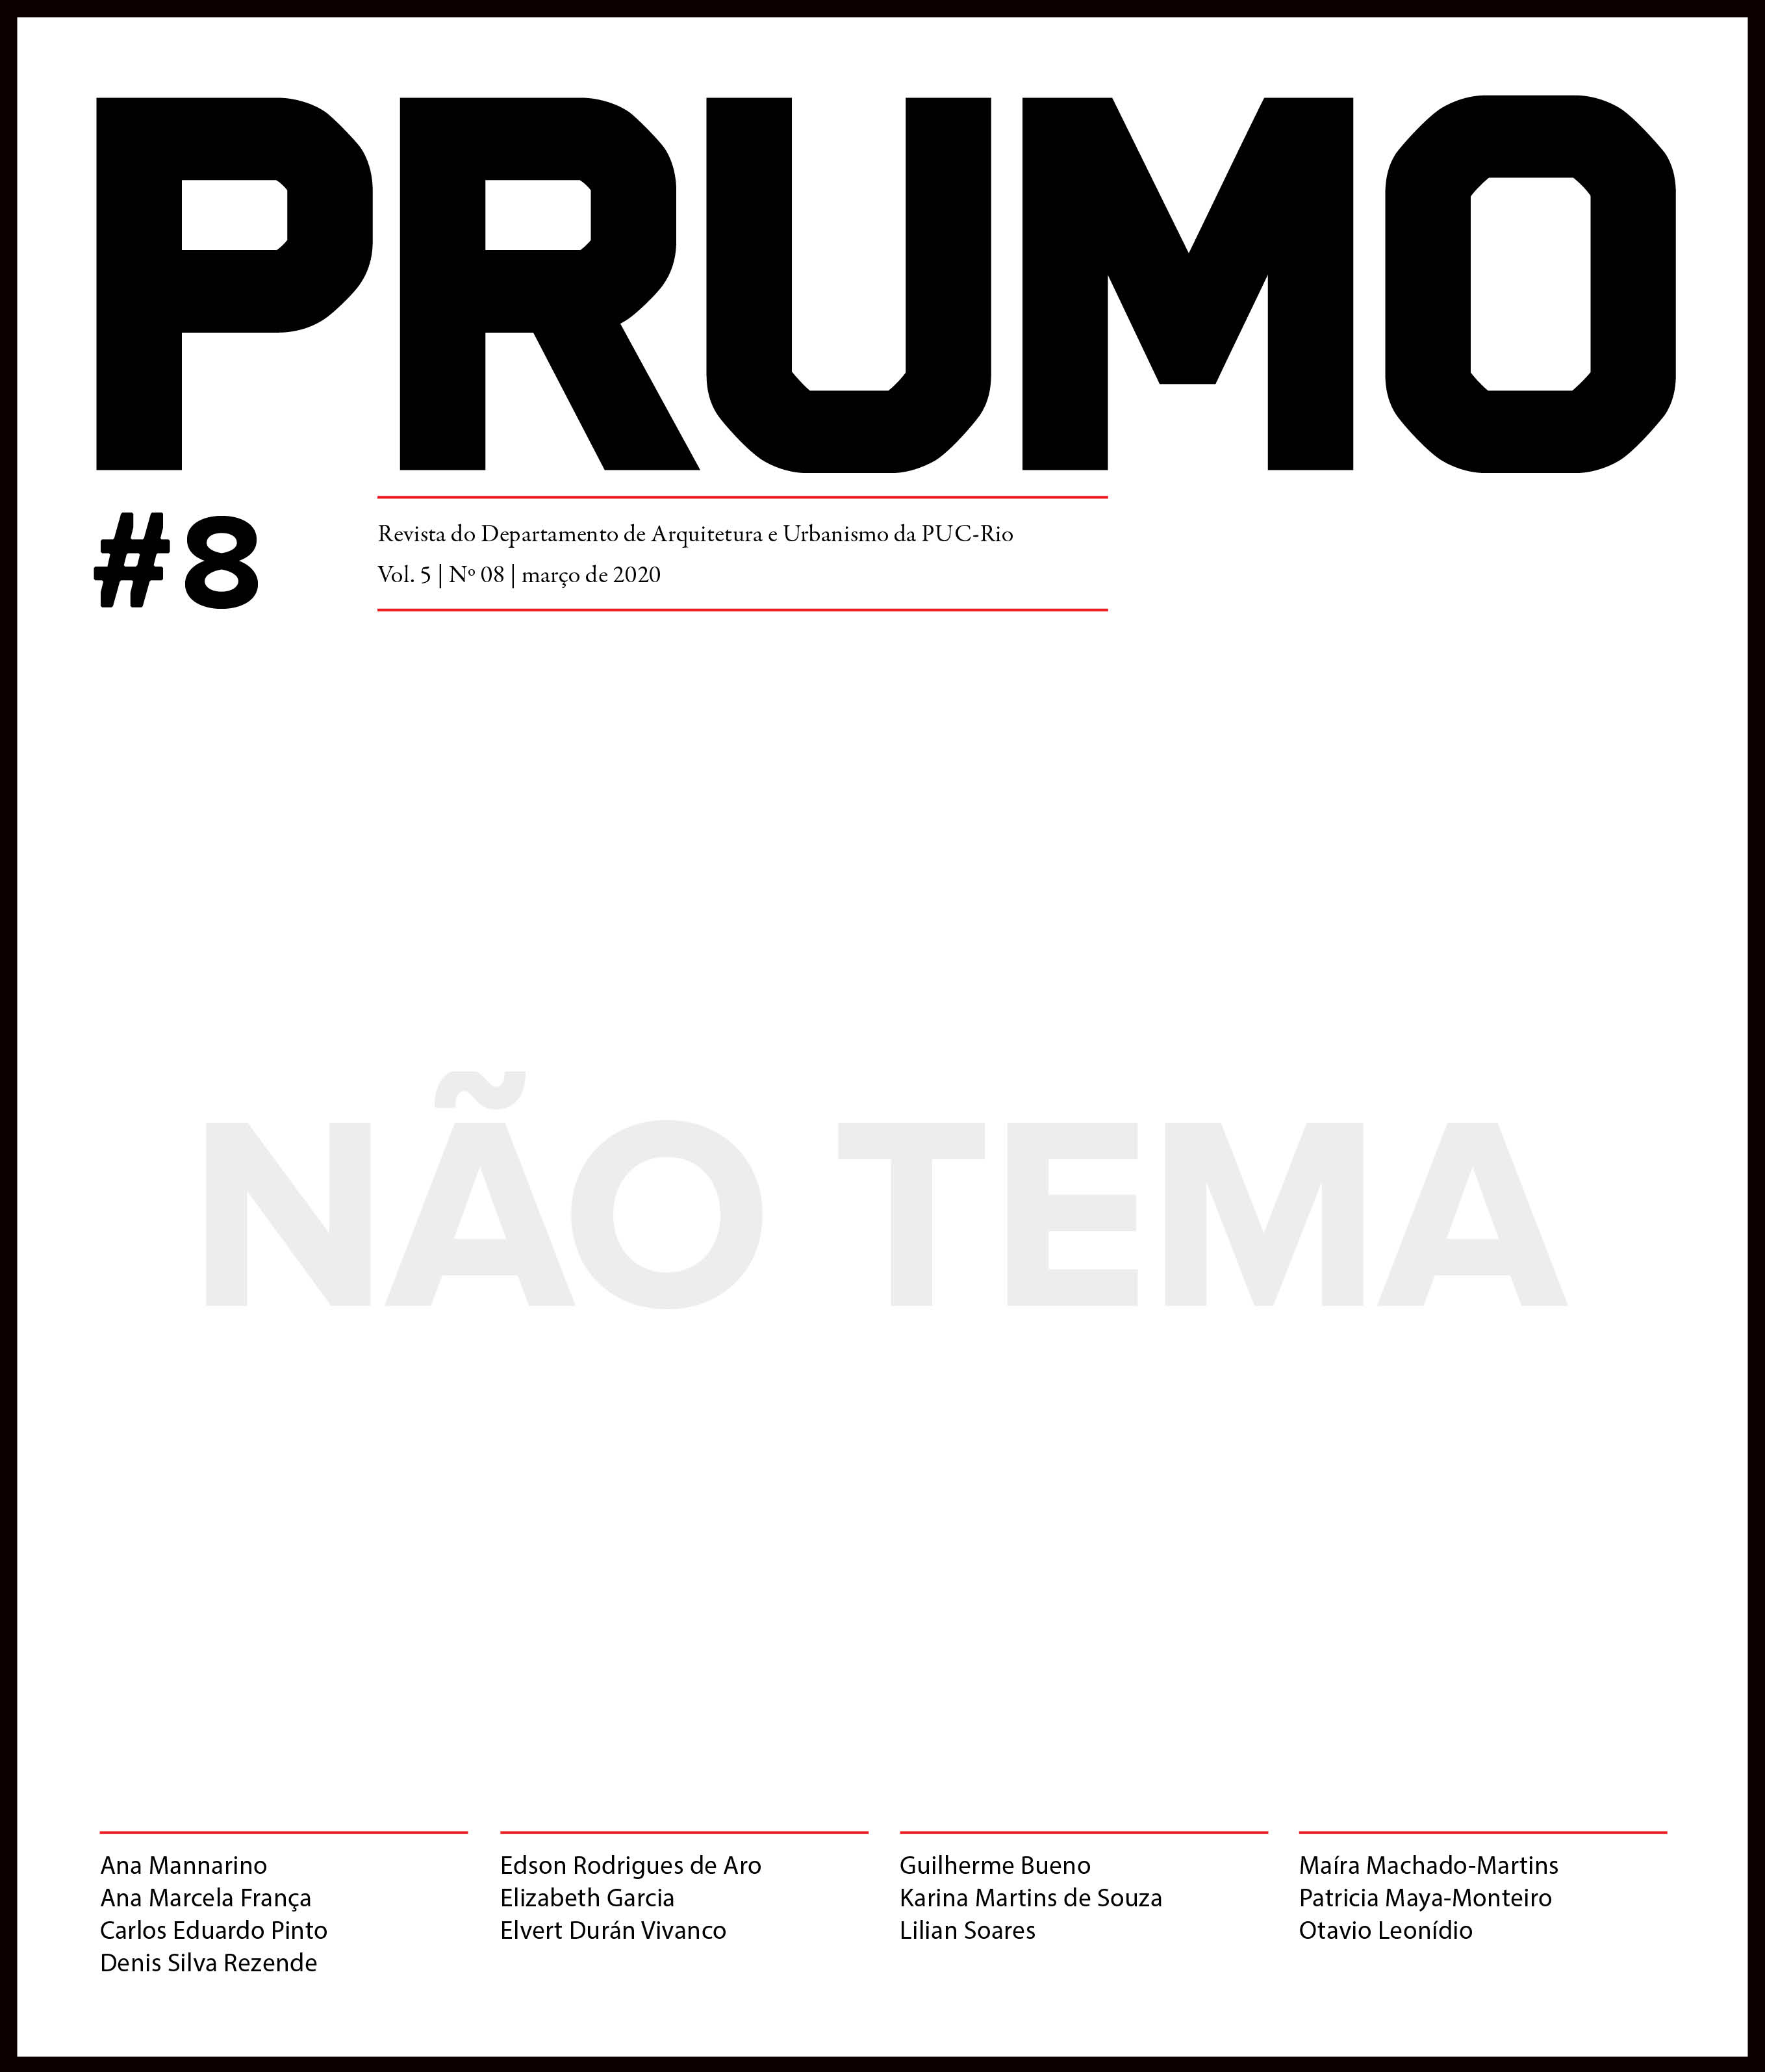 Revista da FAU.UFRJ by Pedro Engel - Issuu